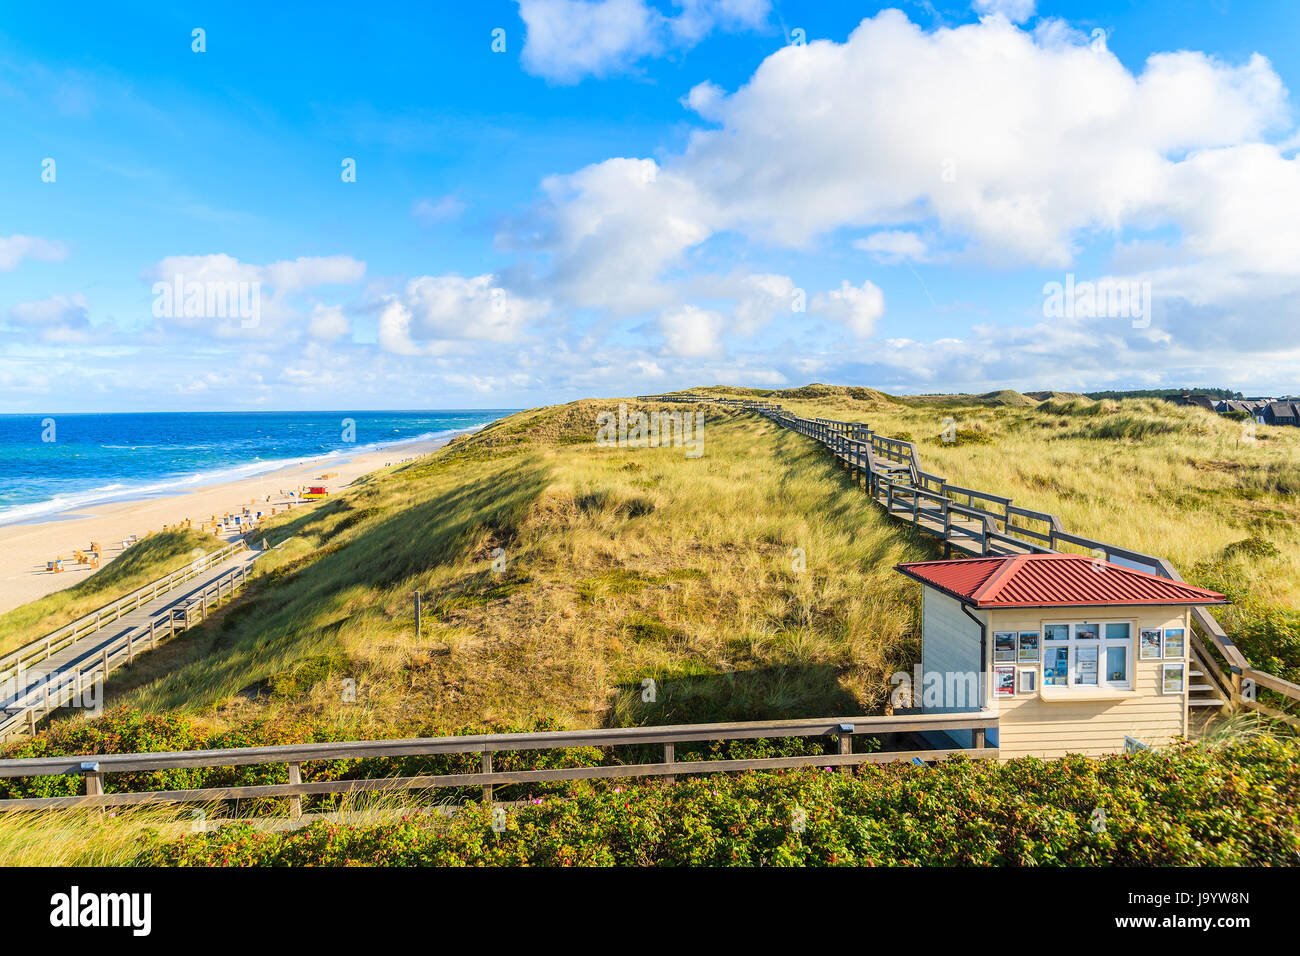 L'île de Sylt, ALLEMAGNE - Sep 11, 2016 : promenade le long du littoral plage Wenningstedt tôt le matin, la lumière, l'île de Sylt, en mer du Nord, de l'Allemagne. Banque D'Images